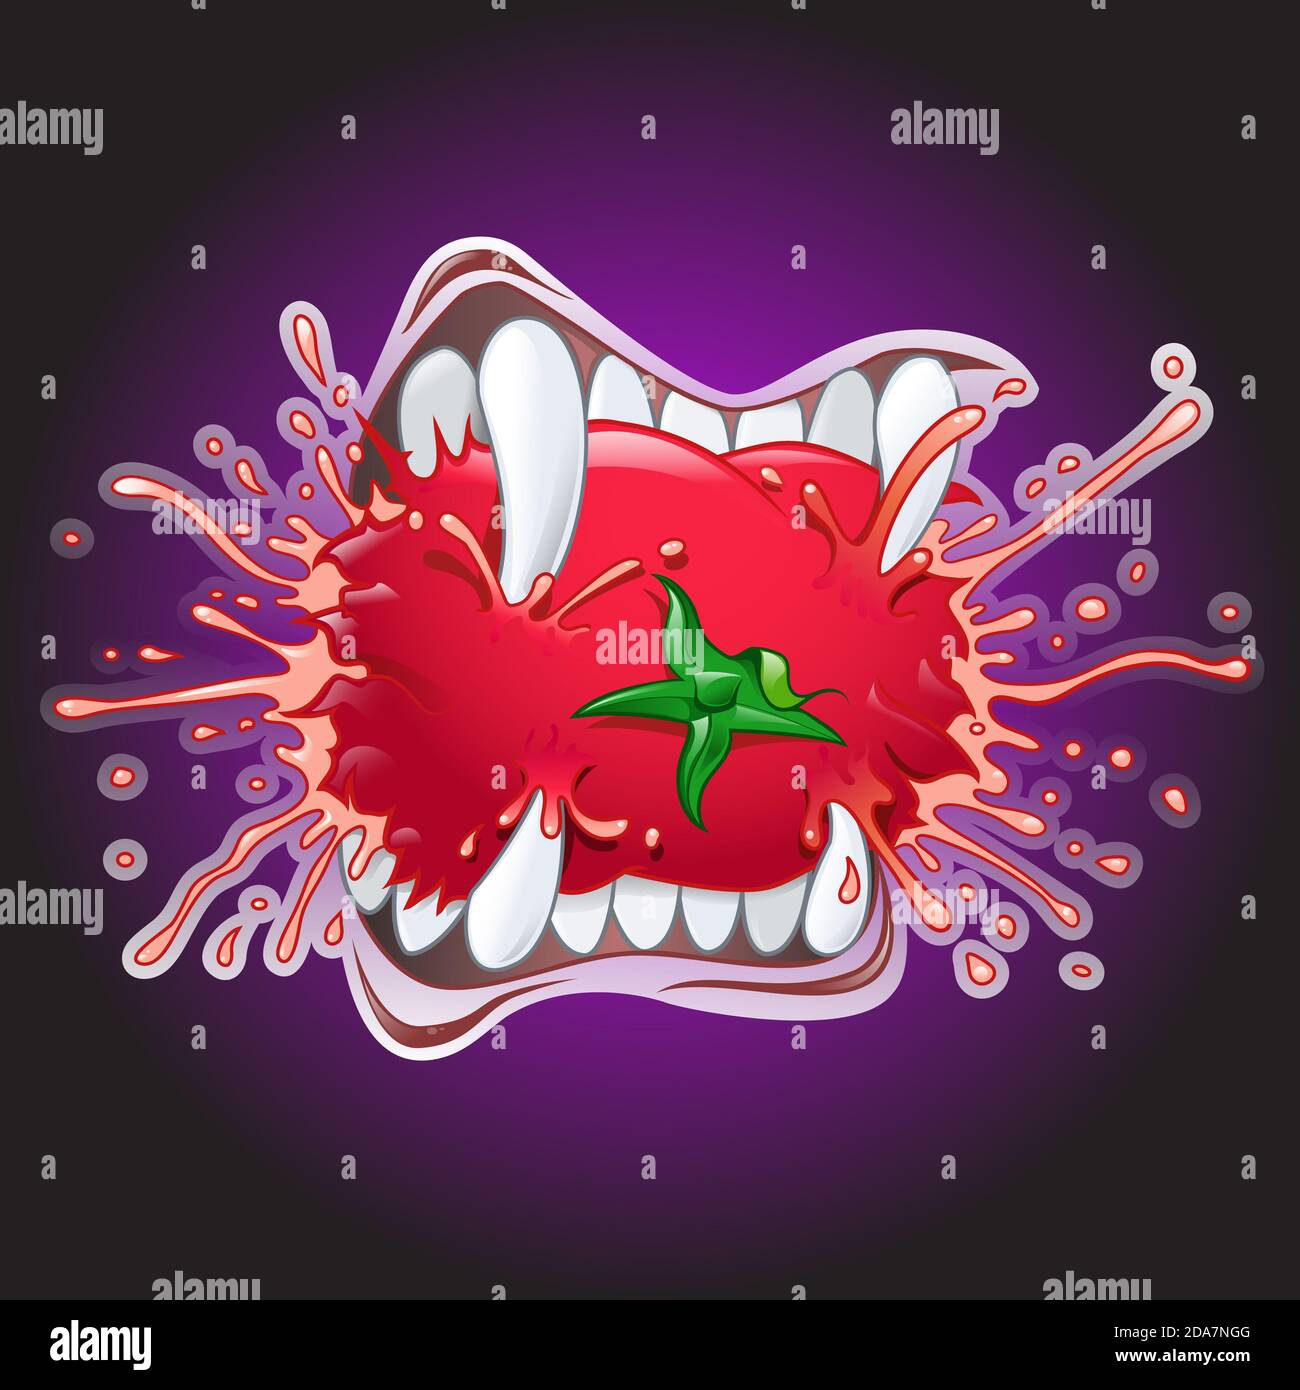 Illustration de la bande dessinée des dents de vampire mordant une tomate juteuse. Arrière-plan violet foncé Banque D'Images